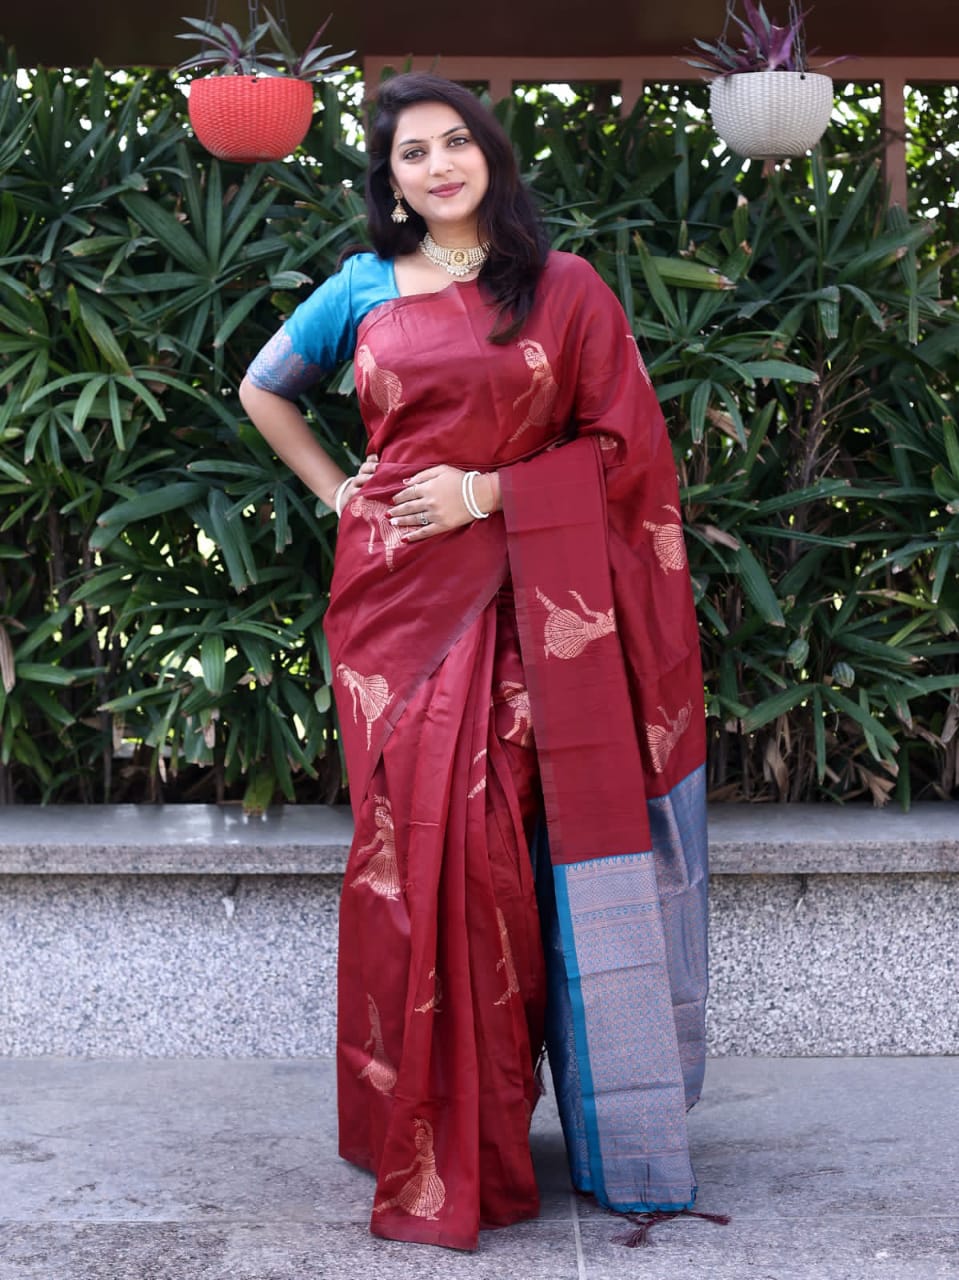 Banarasi soft silk saree